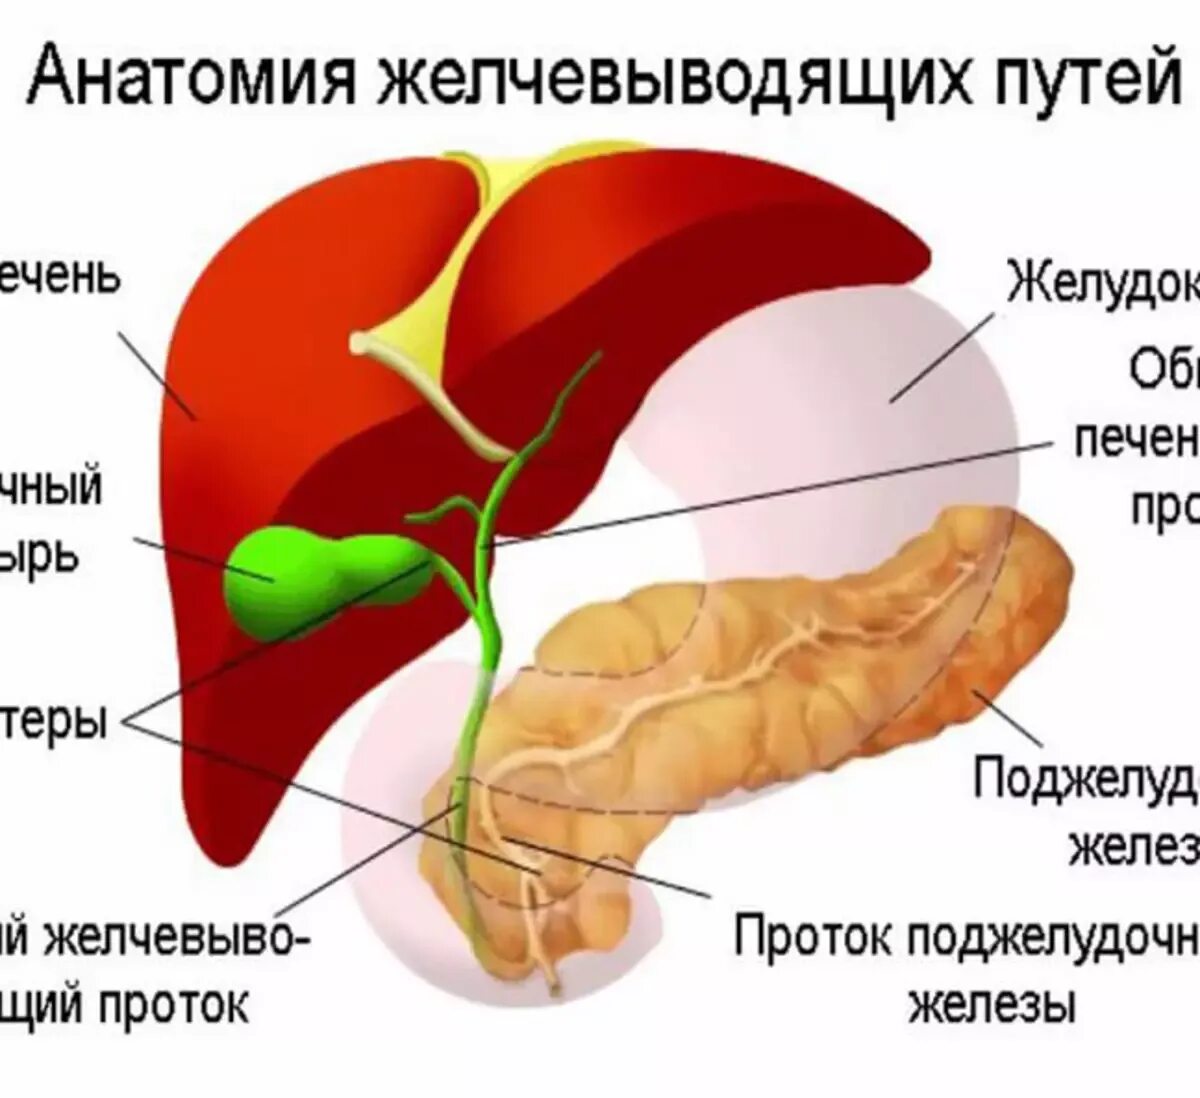 Желудок печень поджелудочная железа желчный пузырь. Печень поджелудочная железа желчный пузырь. Печень желчный пузырь поджелудочная железа анатомия. Желчный пузырь поджелудочная желчный железа. Желудок поджелудочная железа печень желчный пузырь анатомия.